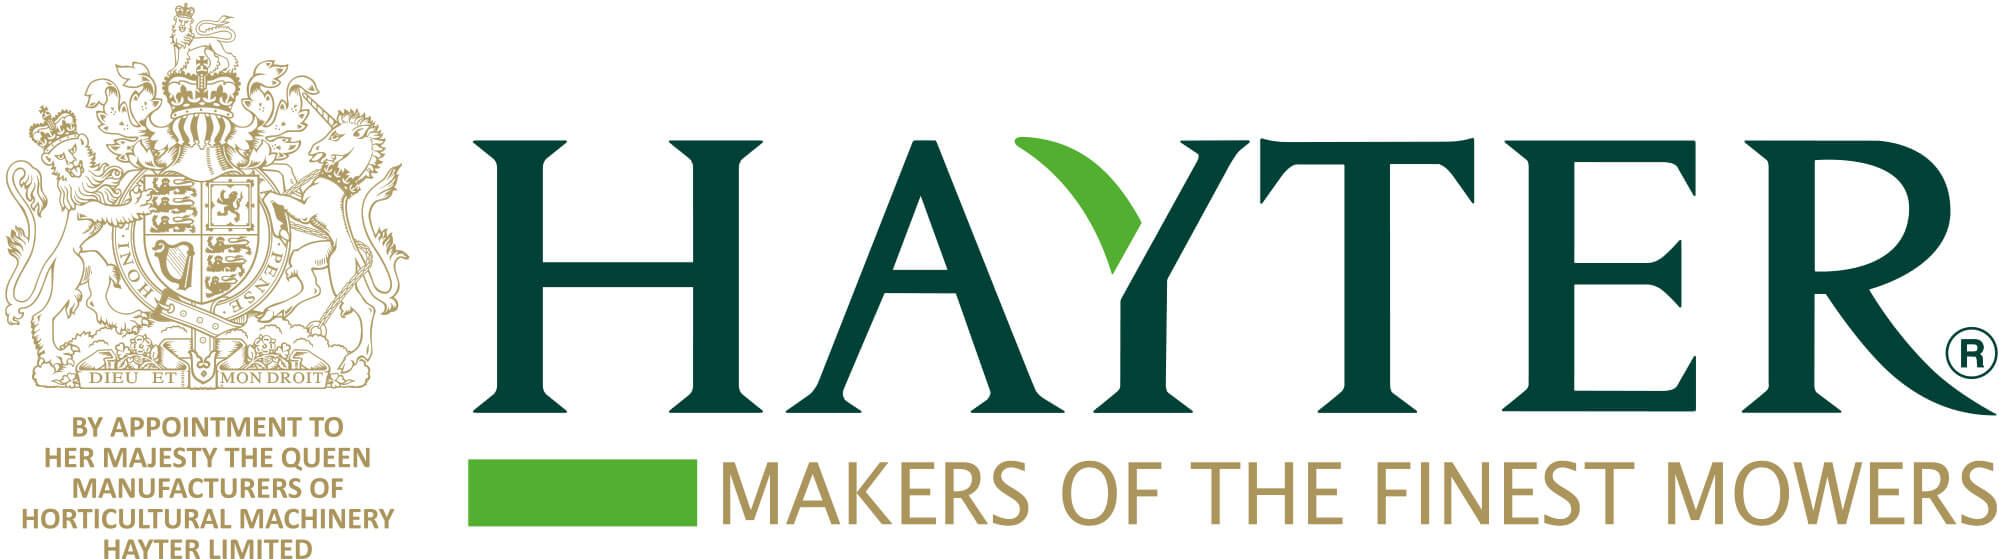 Hayter Mowers logo